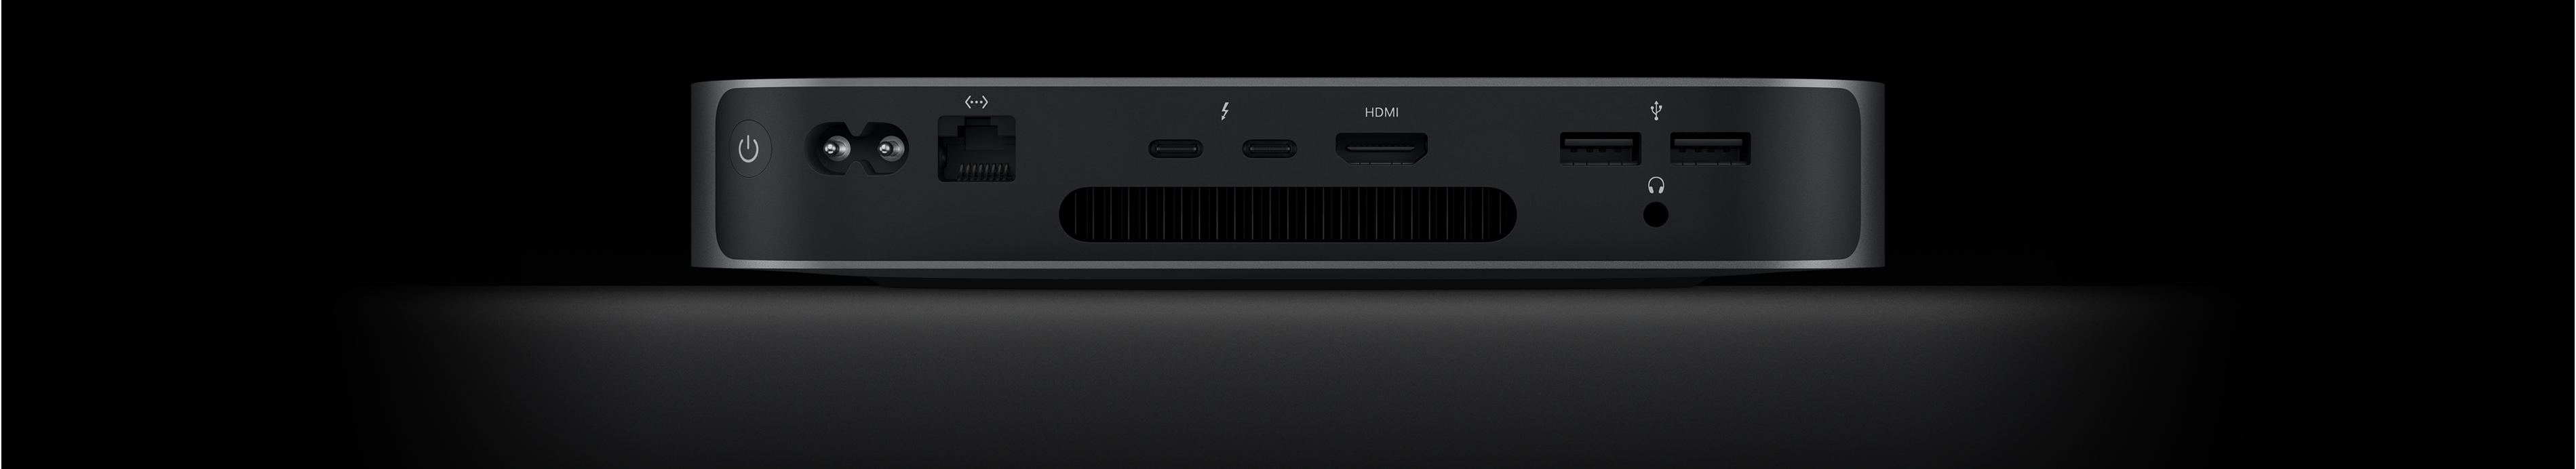 Mac mini sedd bakifrån, med två Thunderbolt 4-portar, HDMI-port, två usb-a-portar, hörlursuttag, Gigabit Ethernet-port, strömkontakt och strömknapp.